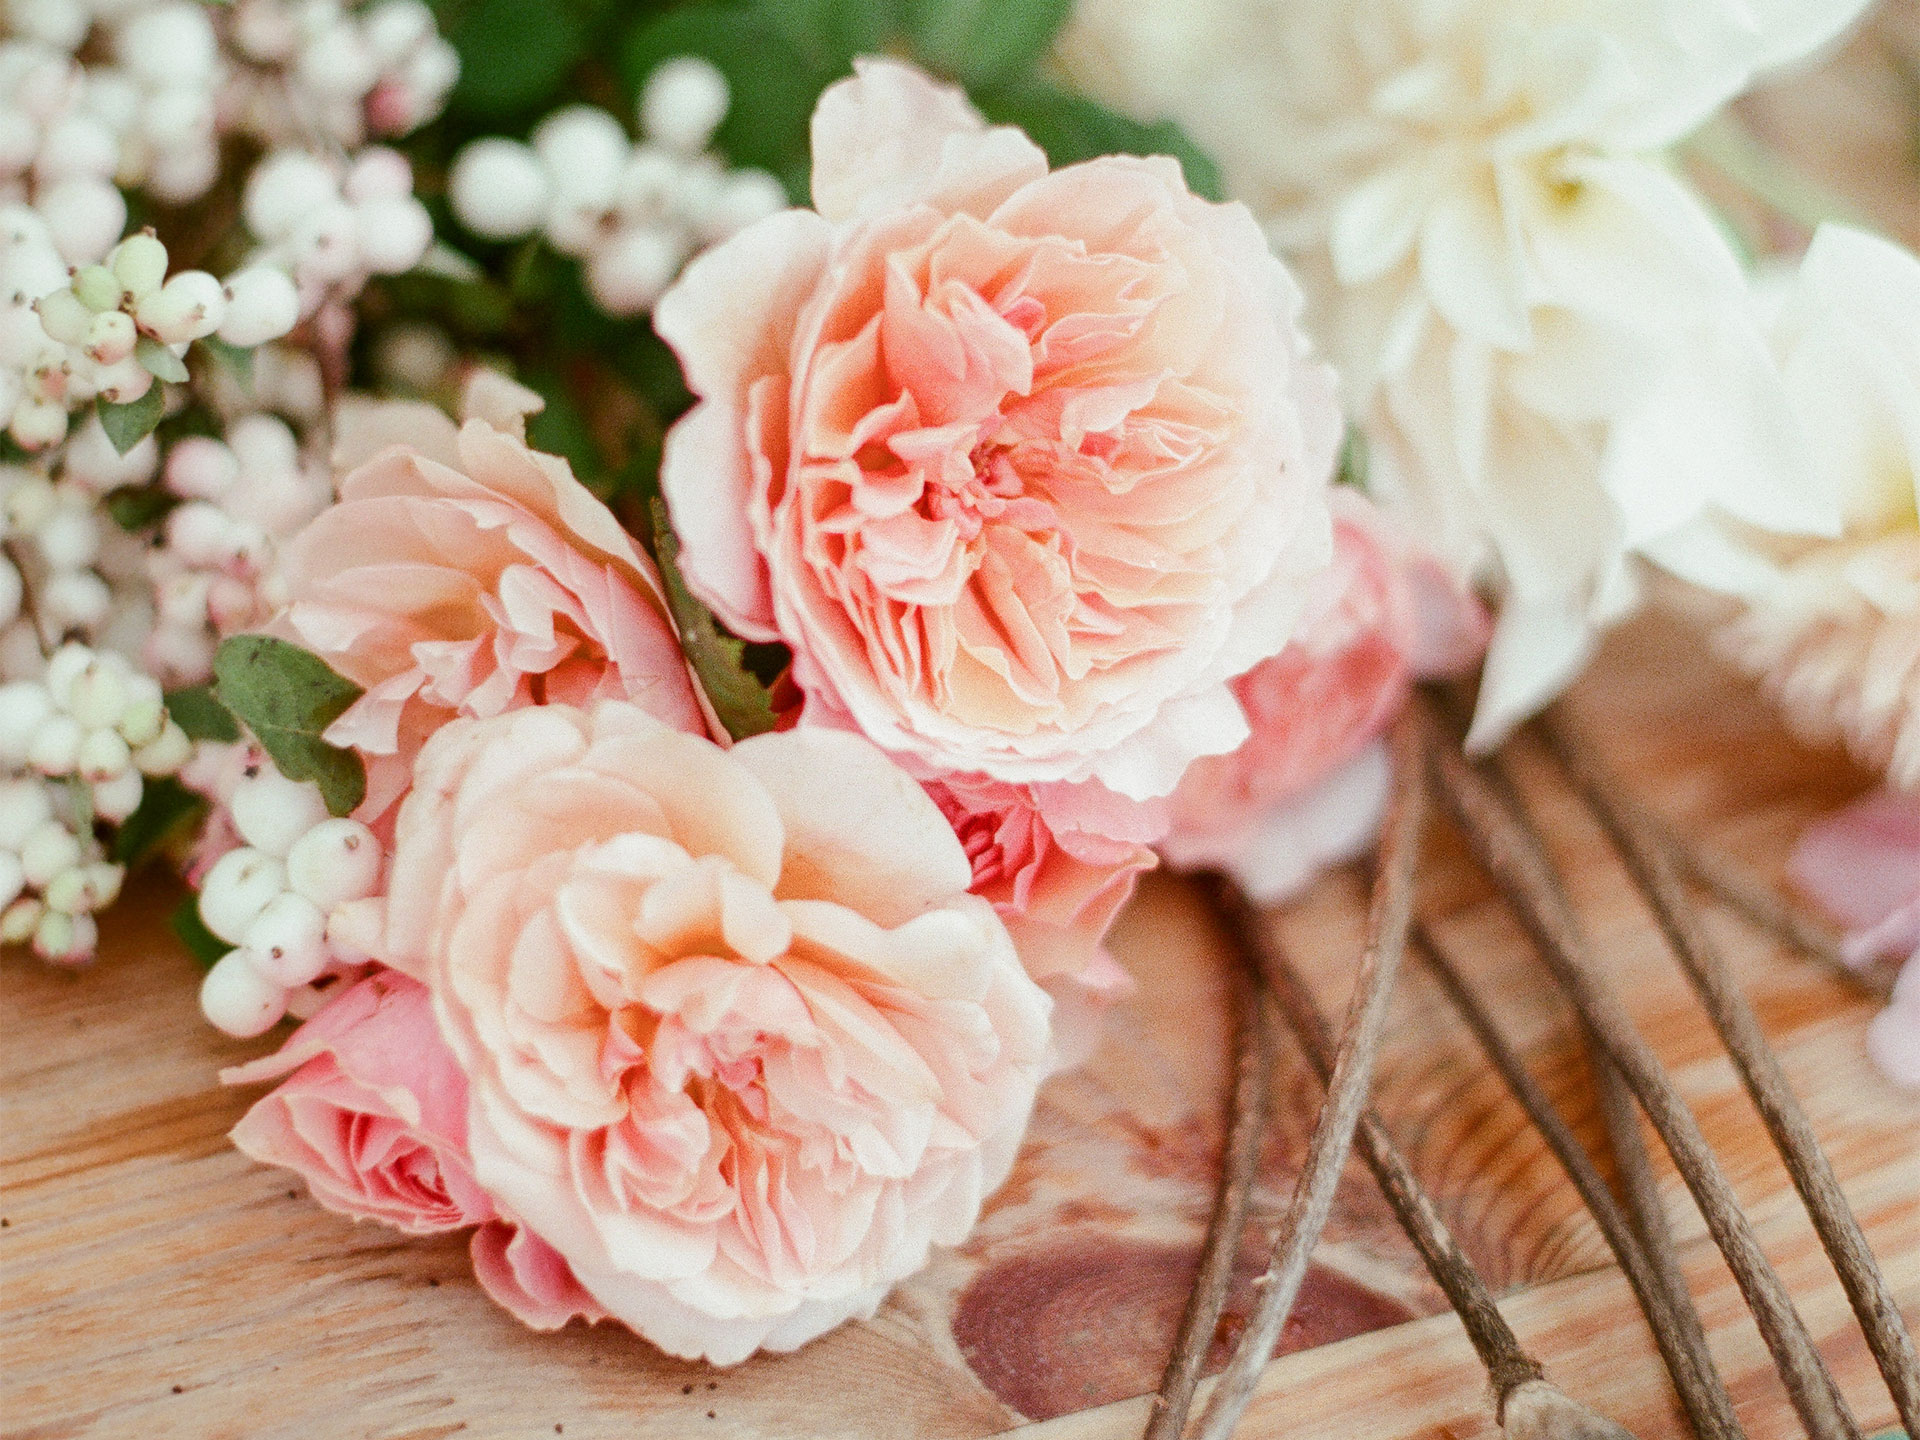 Bouquet de roses sur une table en bois